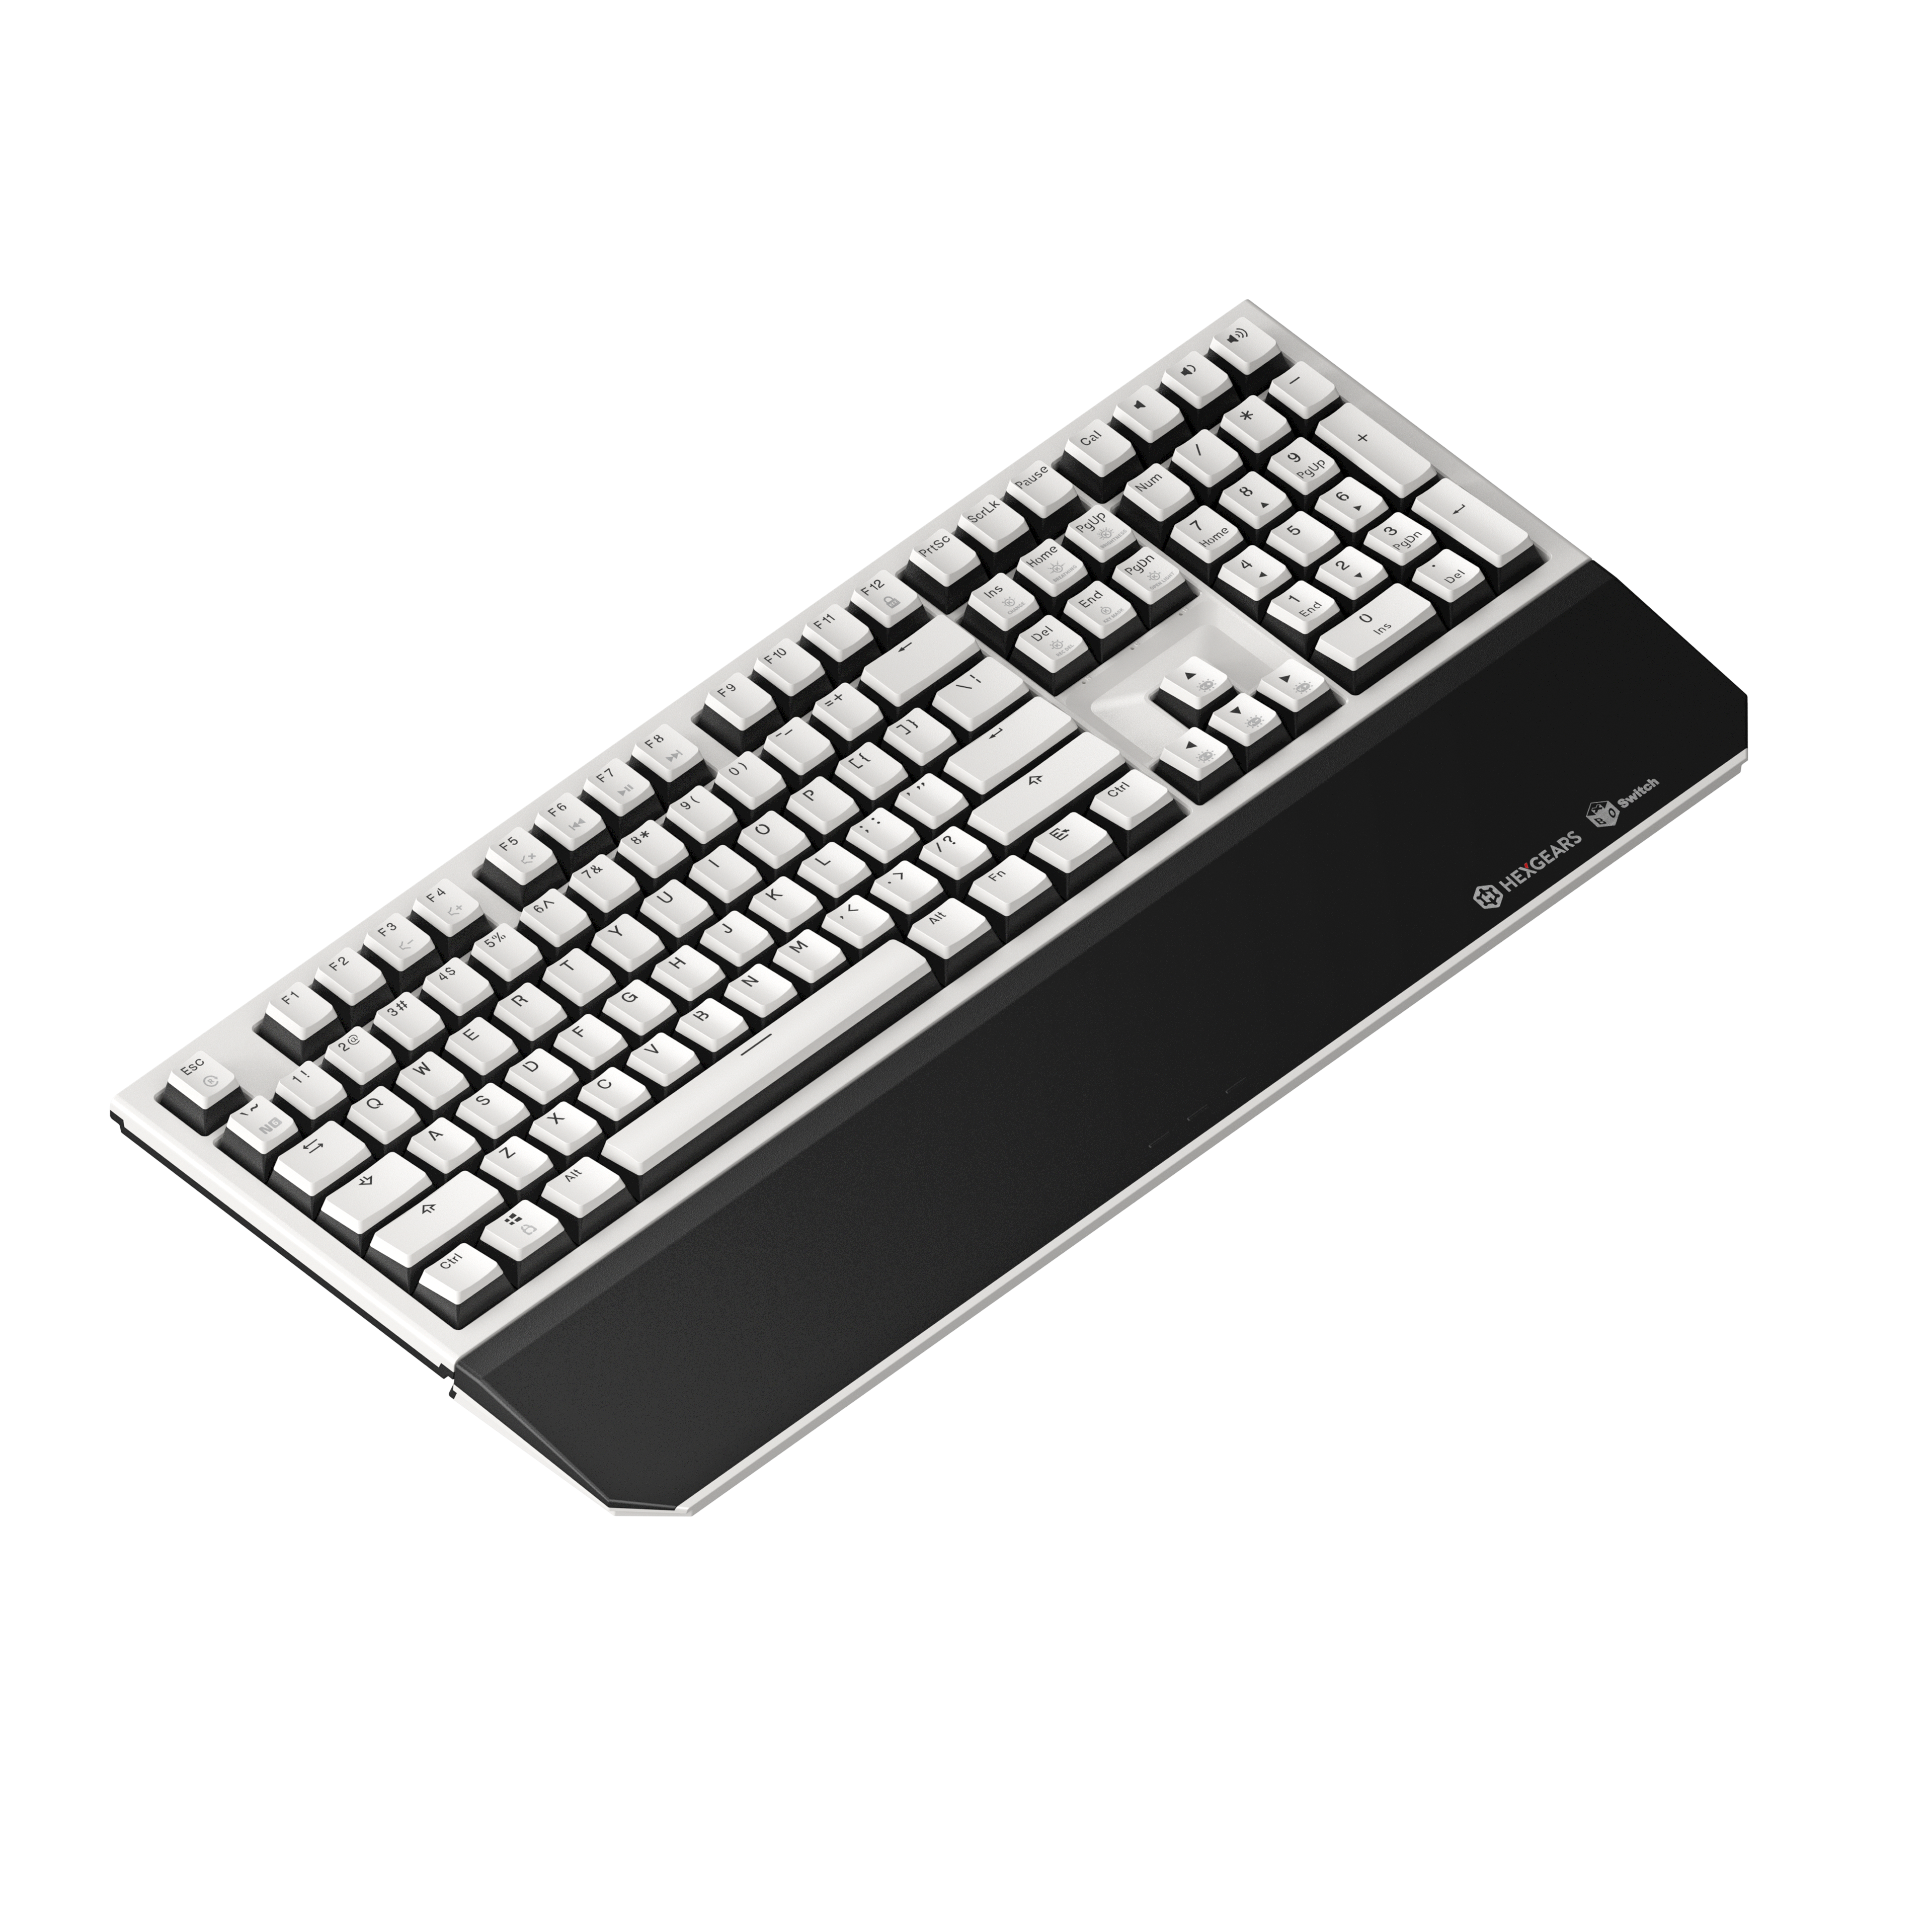 お買い物マラソン限定☆ 送料無料Hexgears X5 Wireless Mechanical Keyboard with Kaihl Box  Gold Switch, Dark Knight Computer Keyboard for Gaming, Typing, Ergonomic  108-k並行輸入